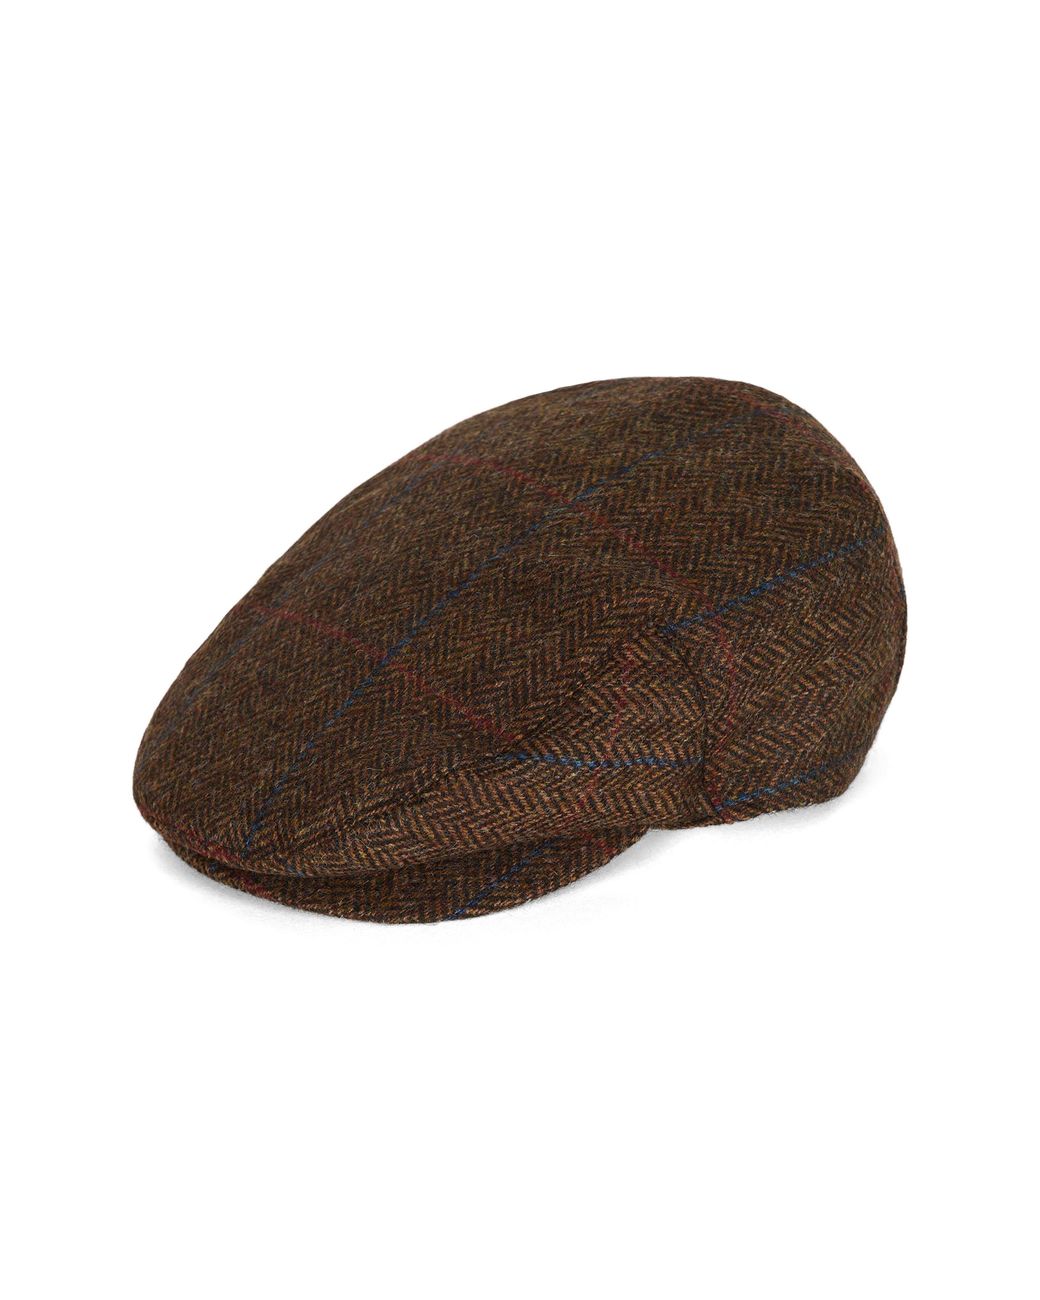 Barbour Cairn Herringbone Tweed Wool Cap In Brown Check At Nordstrom Rack  for Men | Lyst